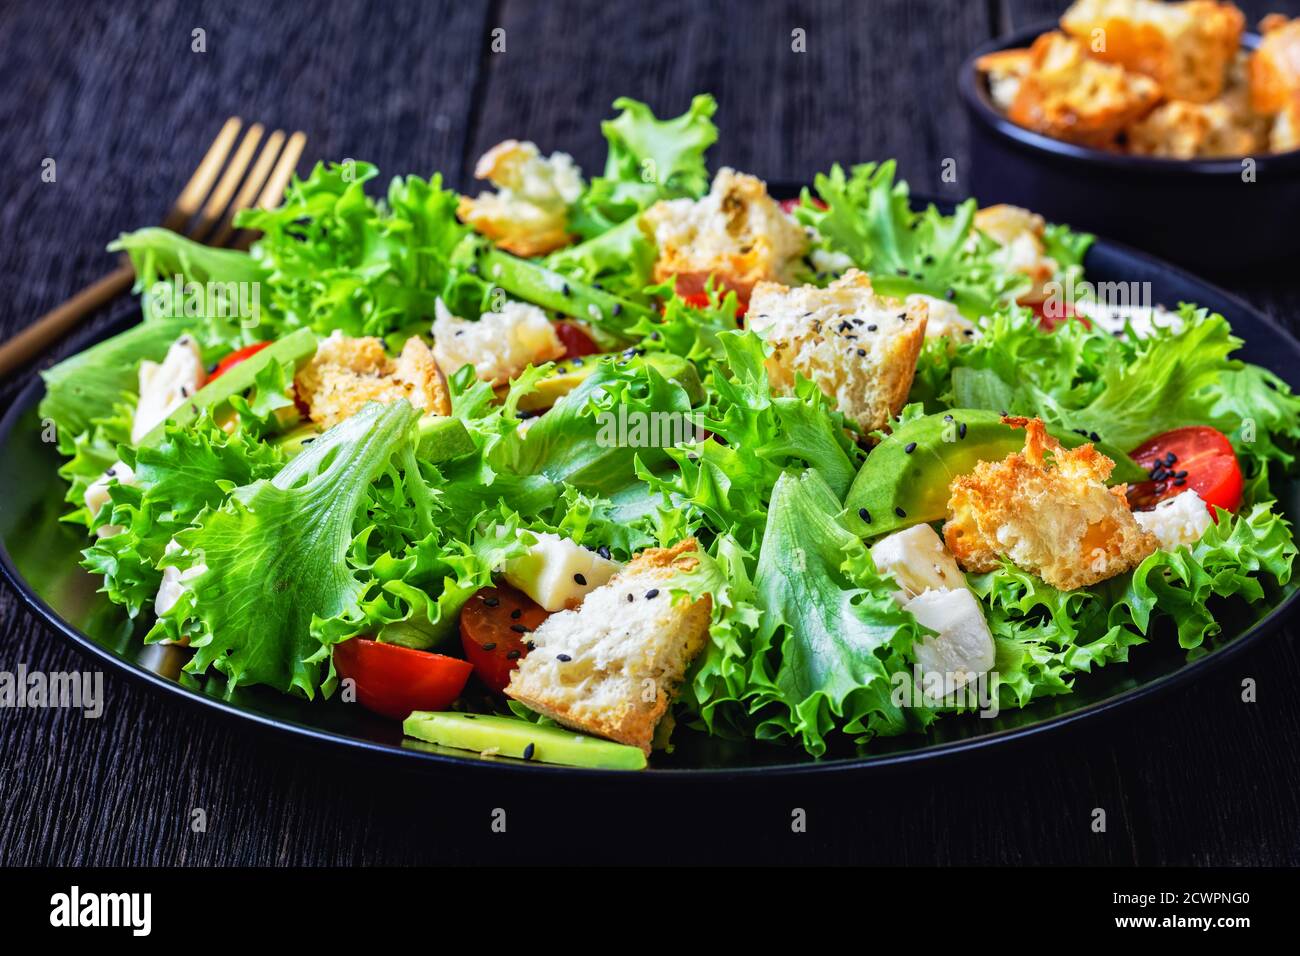 Blattsalat mit Avocado, Kirschtomaten, Mozzarella und Croutons bestreut mit schwarzen Sesamsamen auf einem Teller, auf einem Holztisch, Landschaftsblick Stockfoto